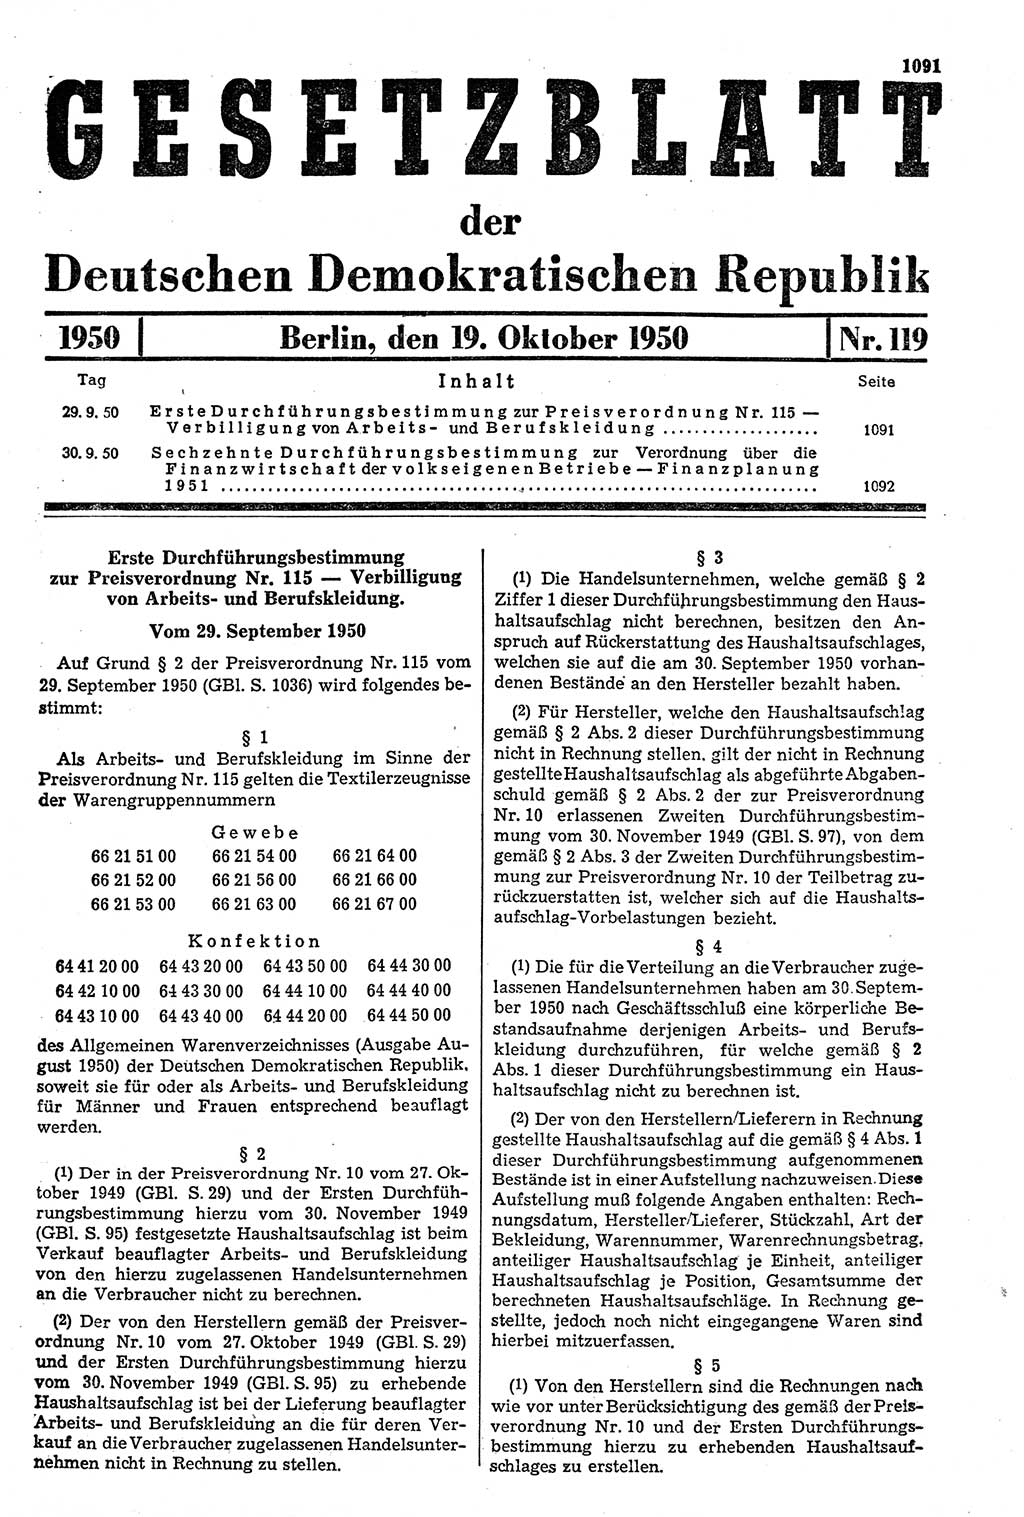 Gesetzblatt (GBl.) der Deutschen Demokratischen Republik (DDR) 1950, Seite 1091 (GBl. DDR 1950, S. 1091)